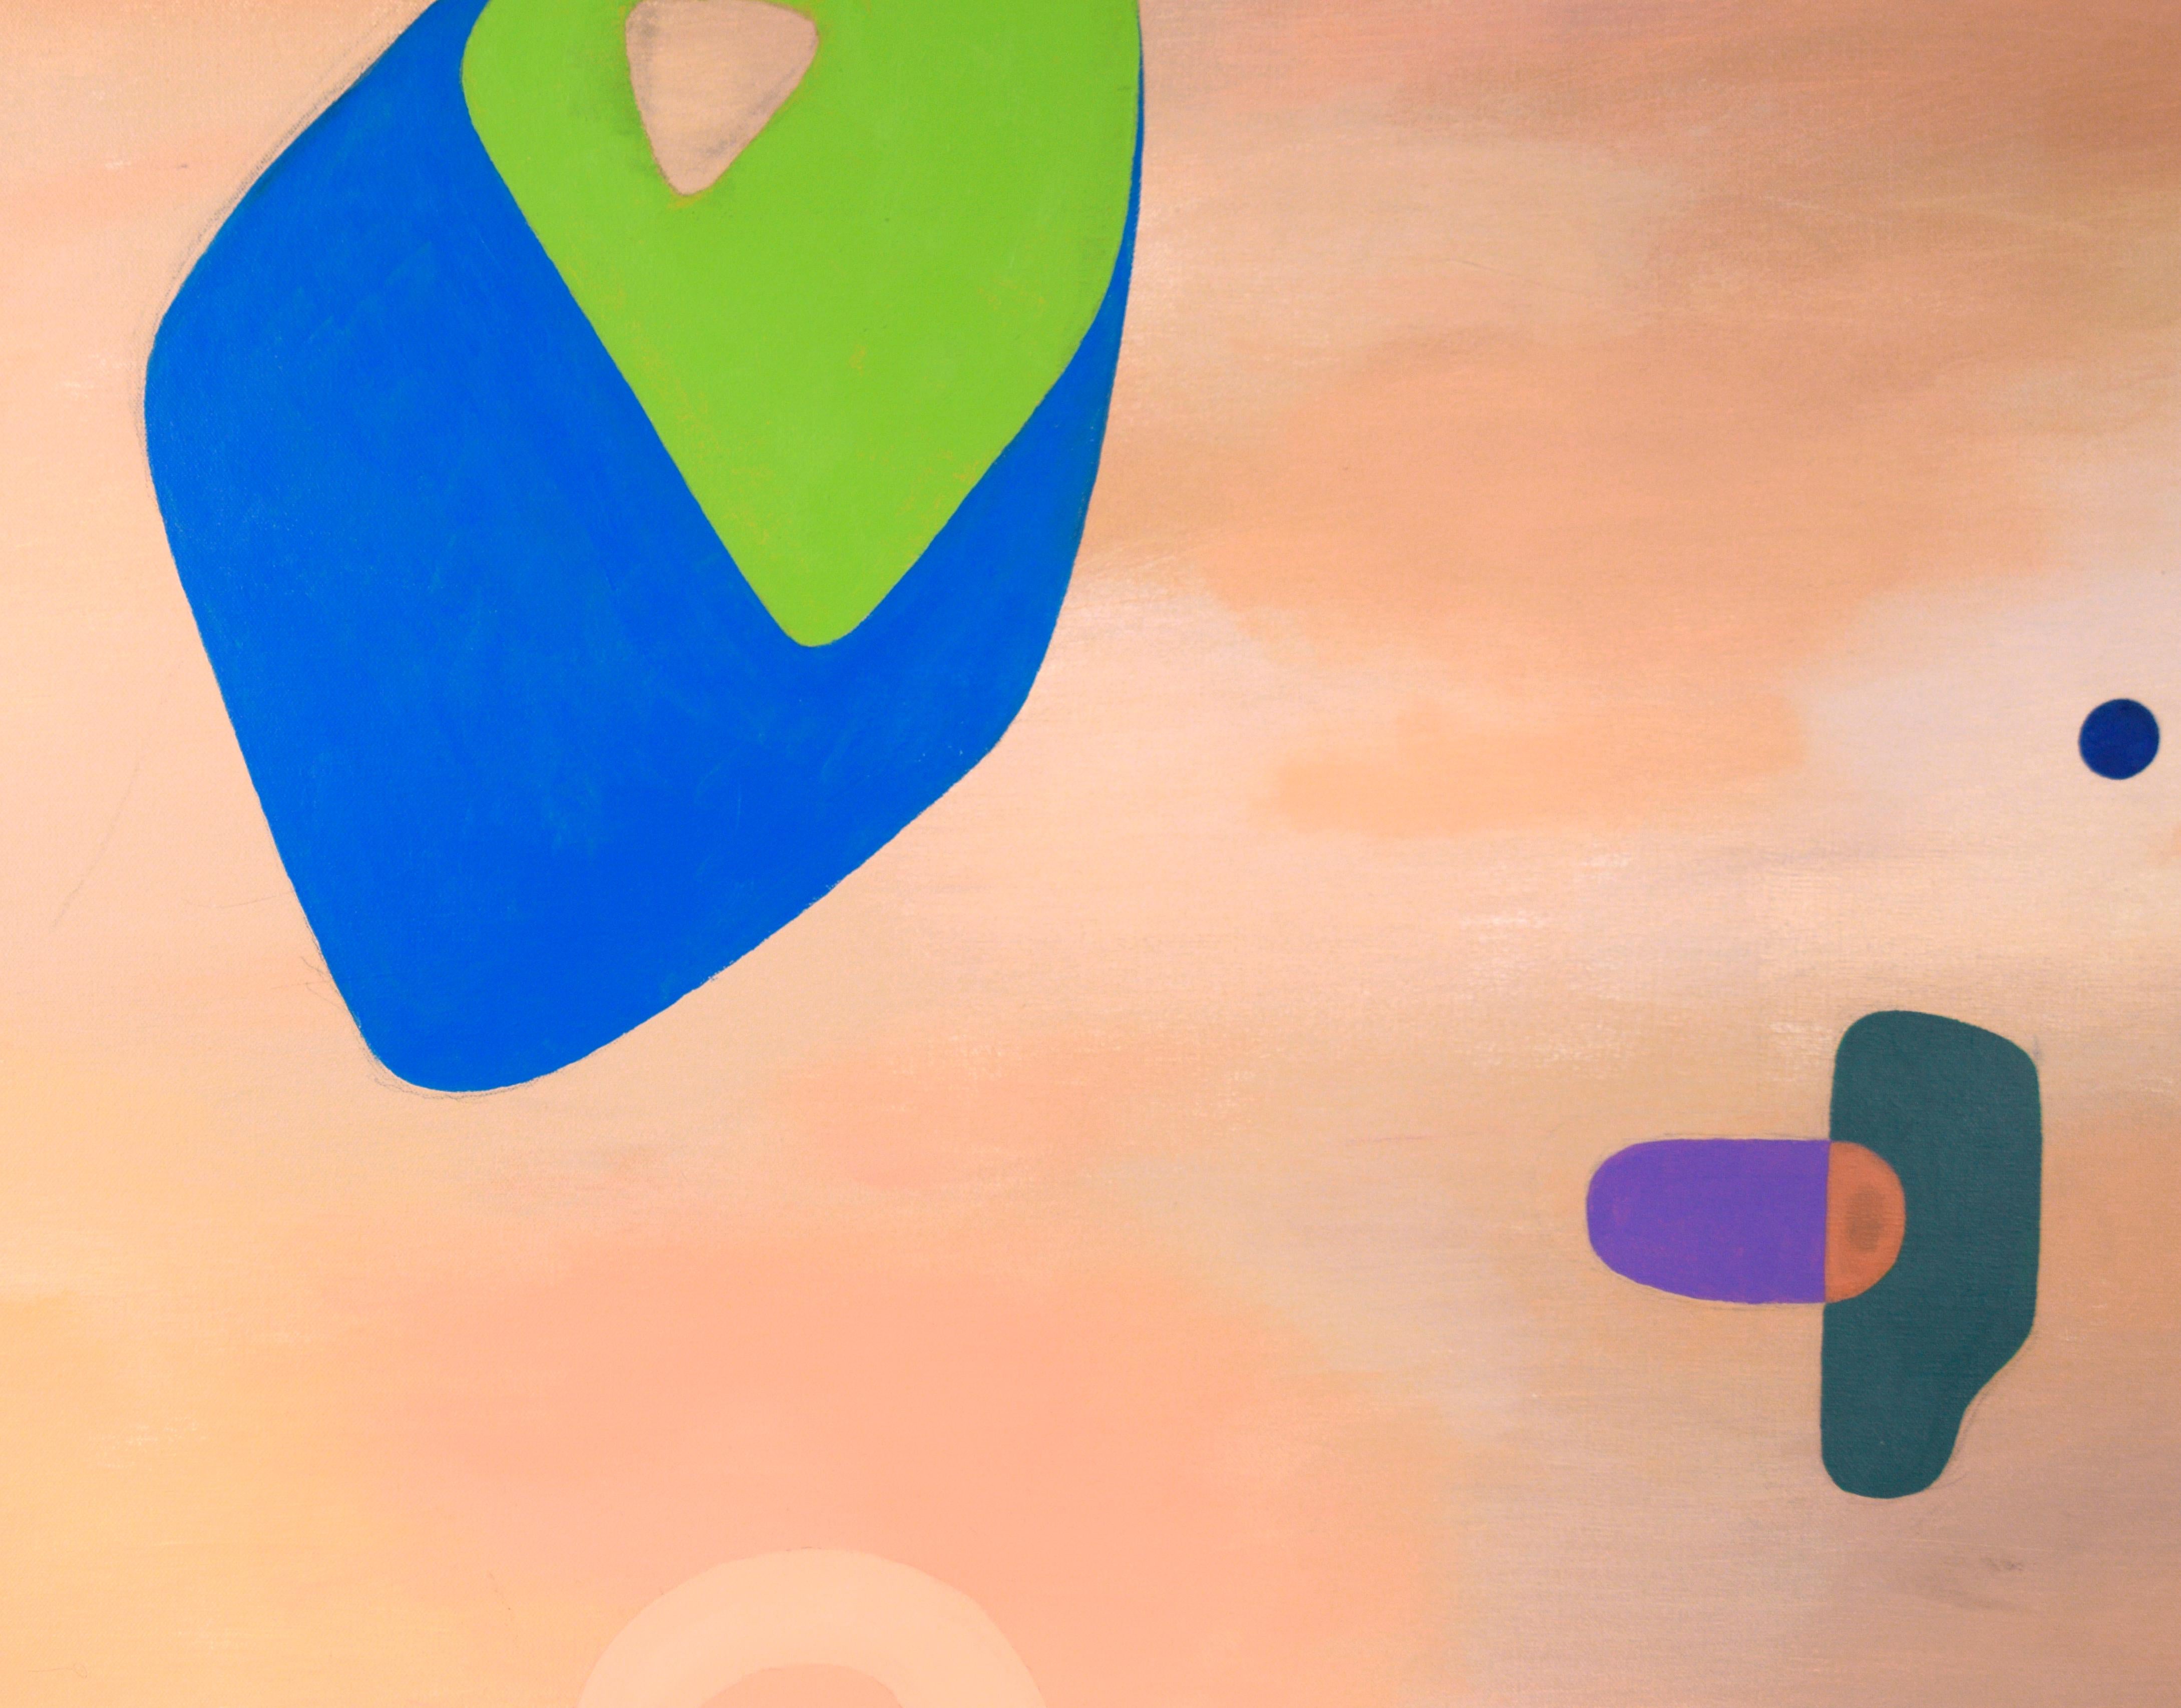 Colors flottants - Composition géométrique abstraite à l'huile sur toile

Composition abstraite aux couleurs vives de l'artiste de San Francisco Richard Turtletaub (américain, né en 1959). Des formes variées de couleurs vives flottent dans un champ